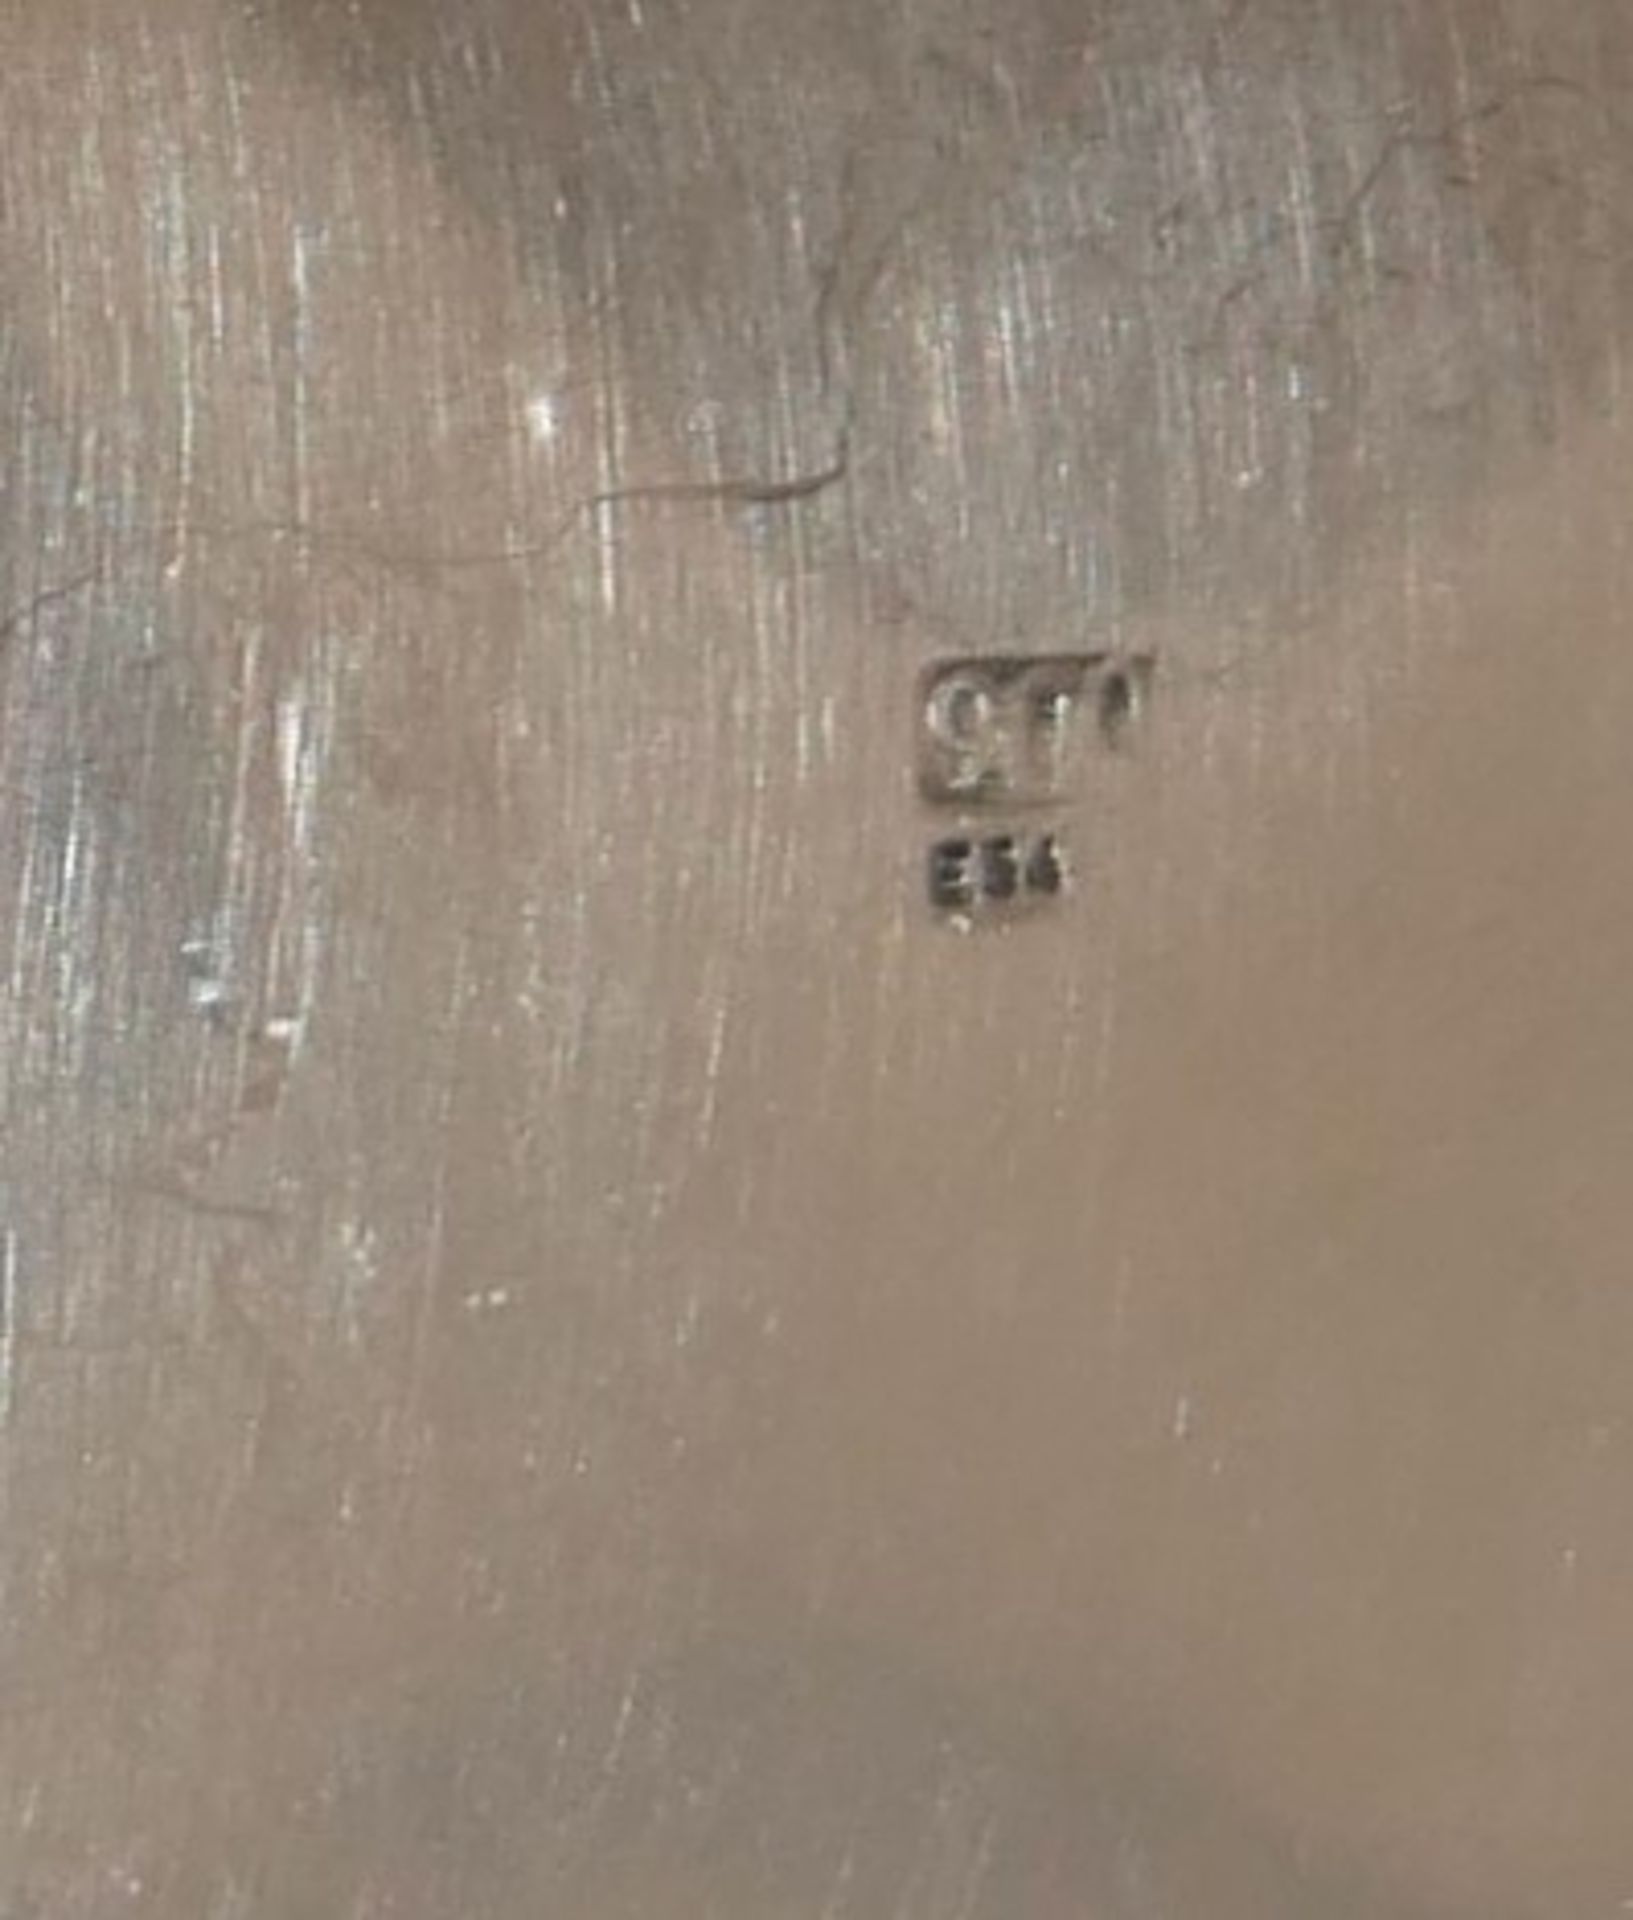 900er Silber Schälchen auf Füßen, gepunzt 900 & ES4. Höhe ca. 4,5 cm, Breite ca. 10 cm - Image 4 of 4